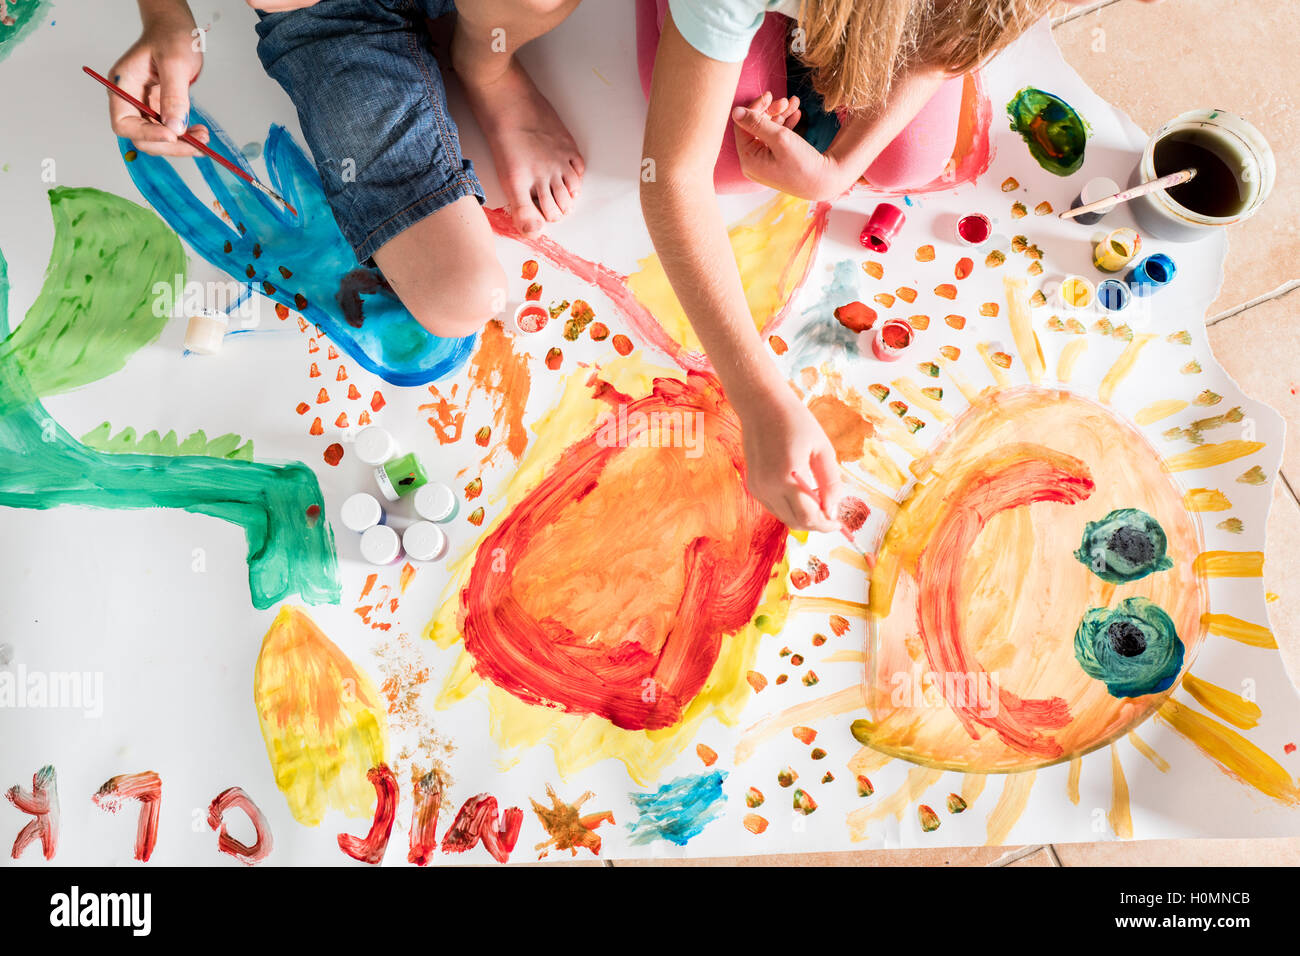 Kinder malen zusammen auf einem großen Blatt Papier Stockfoto